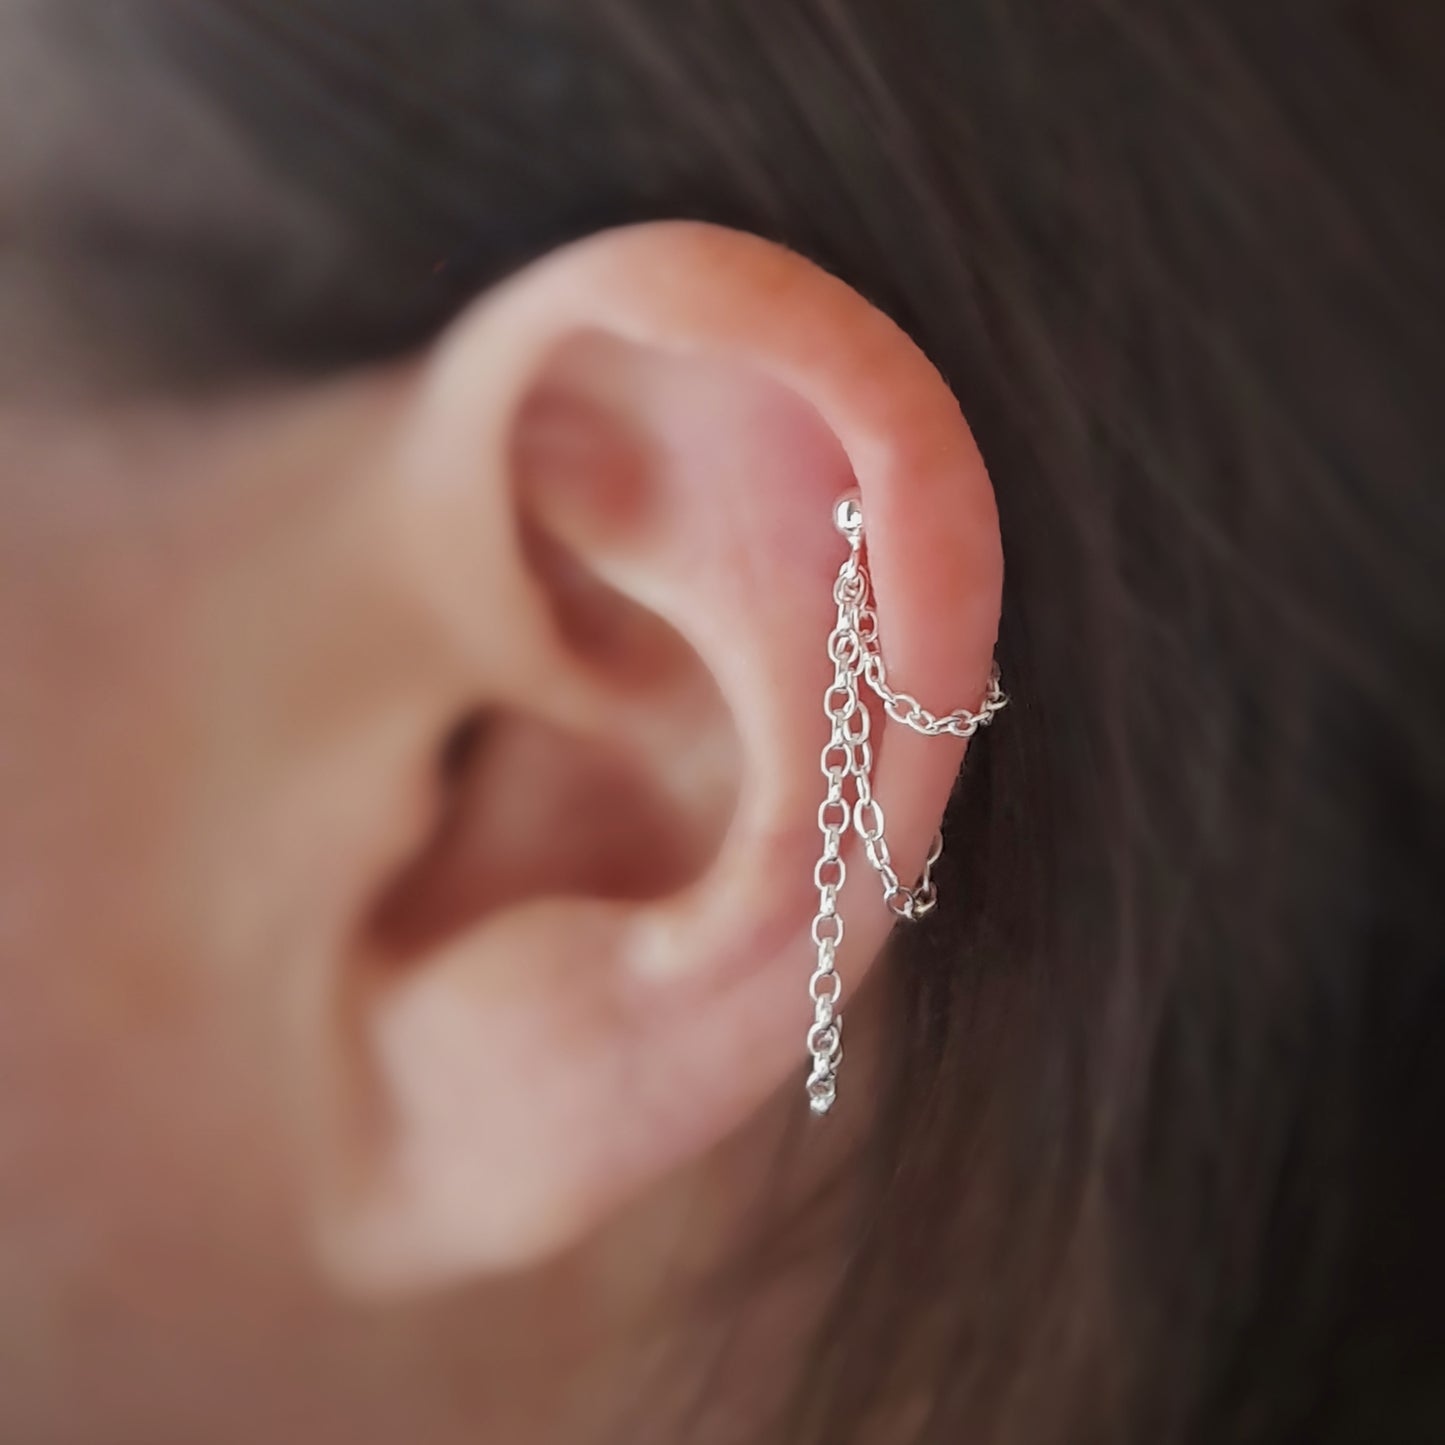 Silver helix triple chain earring